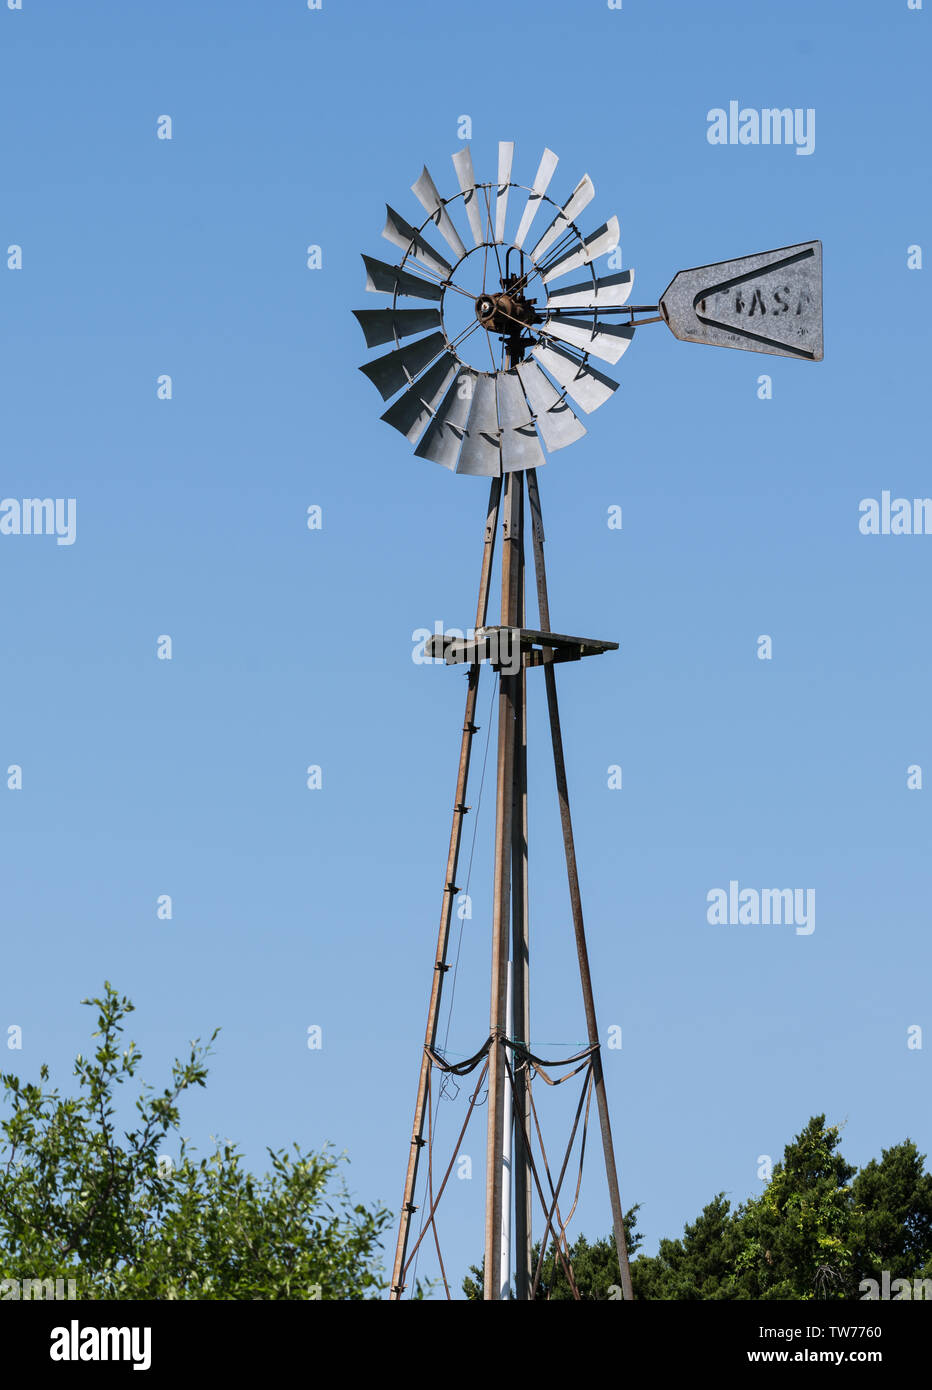 Wind mühlen in West Texas verwendet Boden Wasser zu heben. Hill Country, Texas, USA. Stockfoto